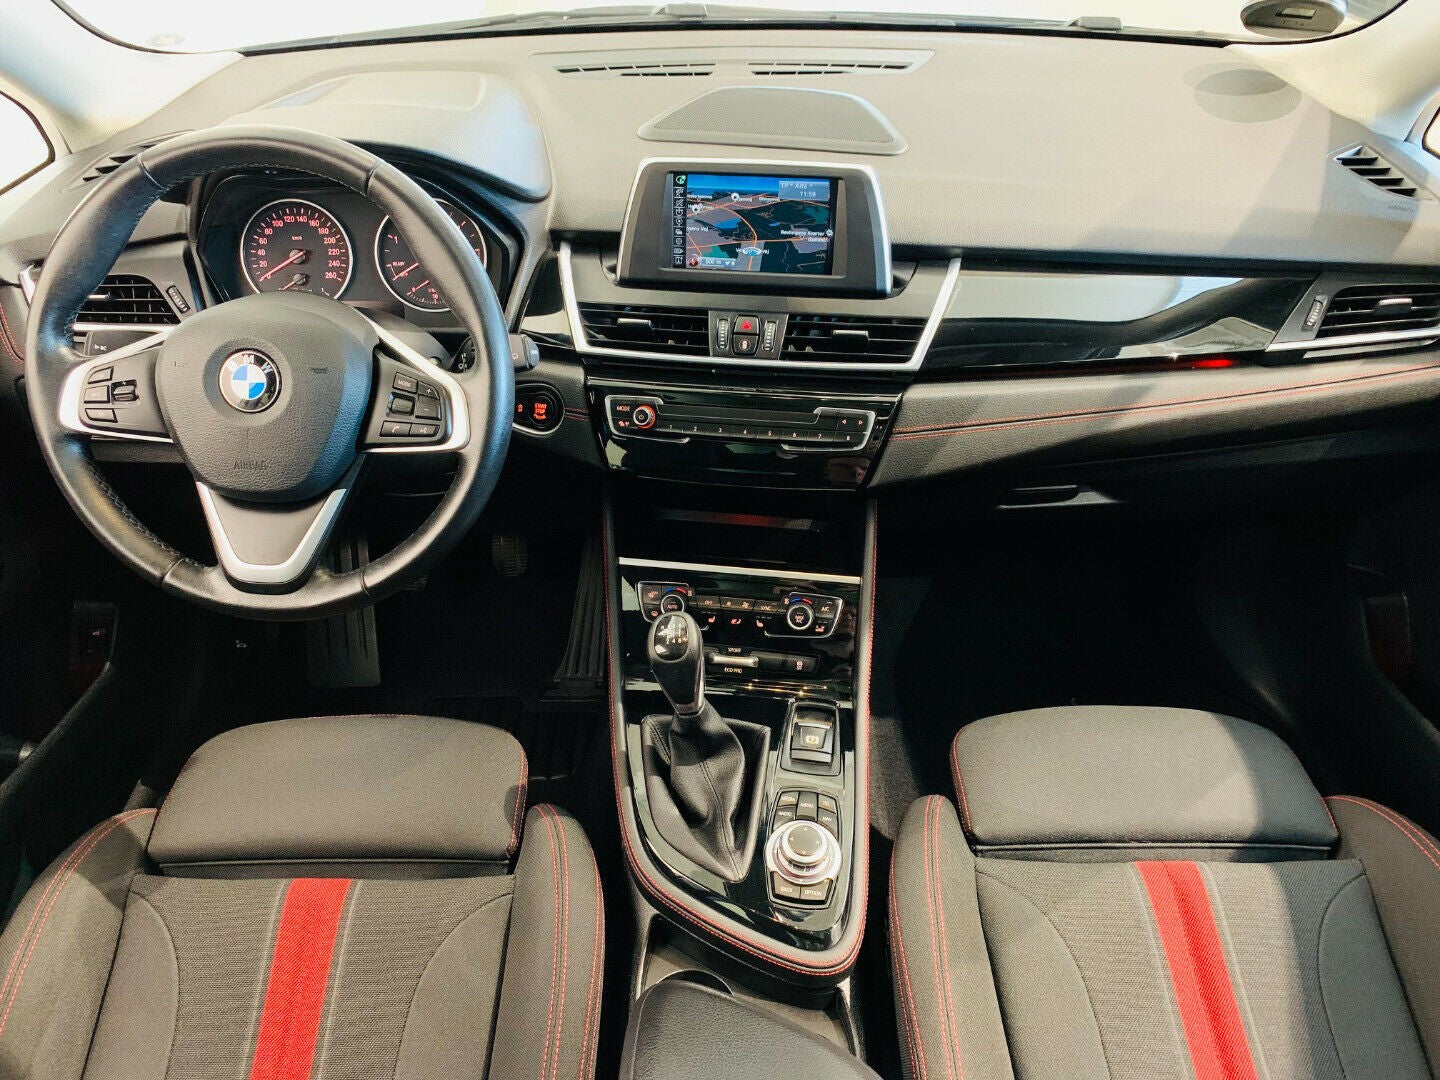 BMW 220d 2,0 Active Tourer Advantage,  5-dørs